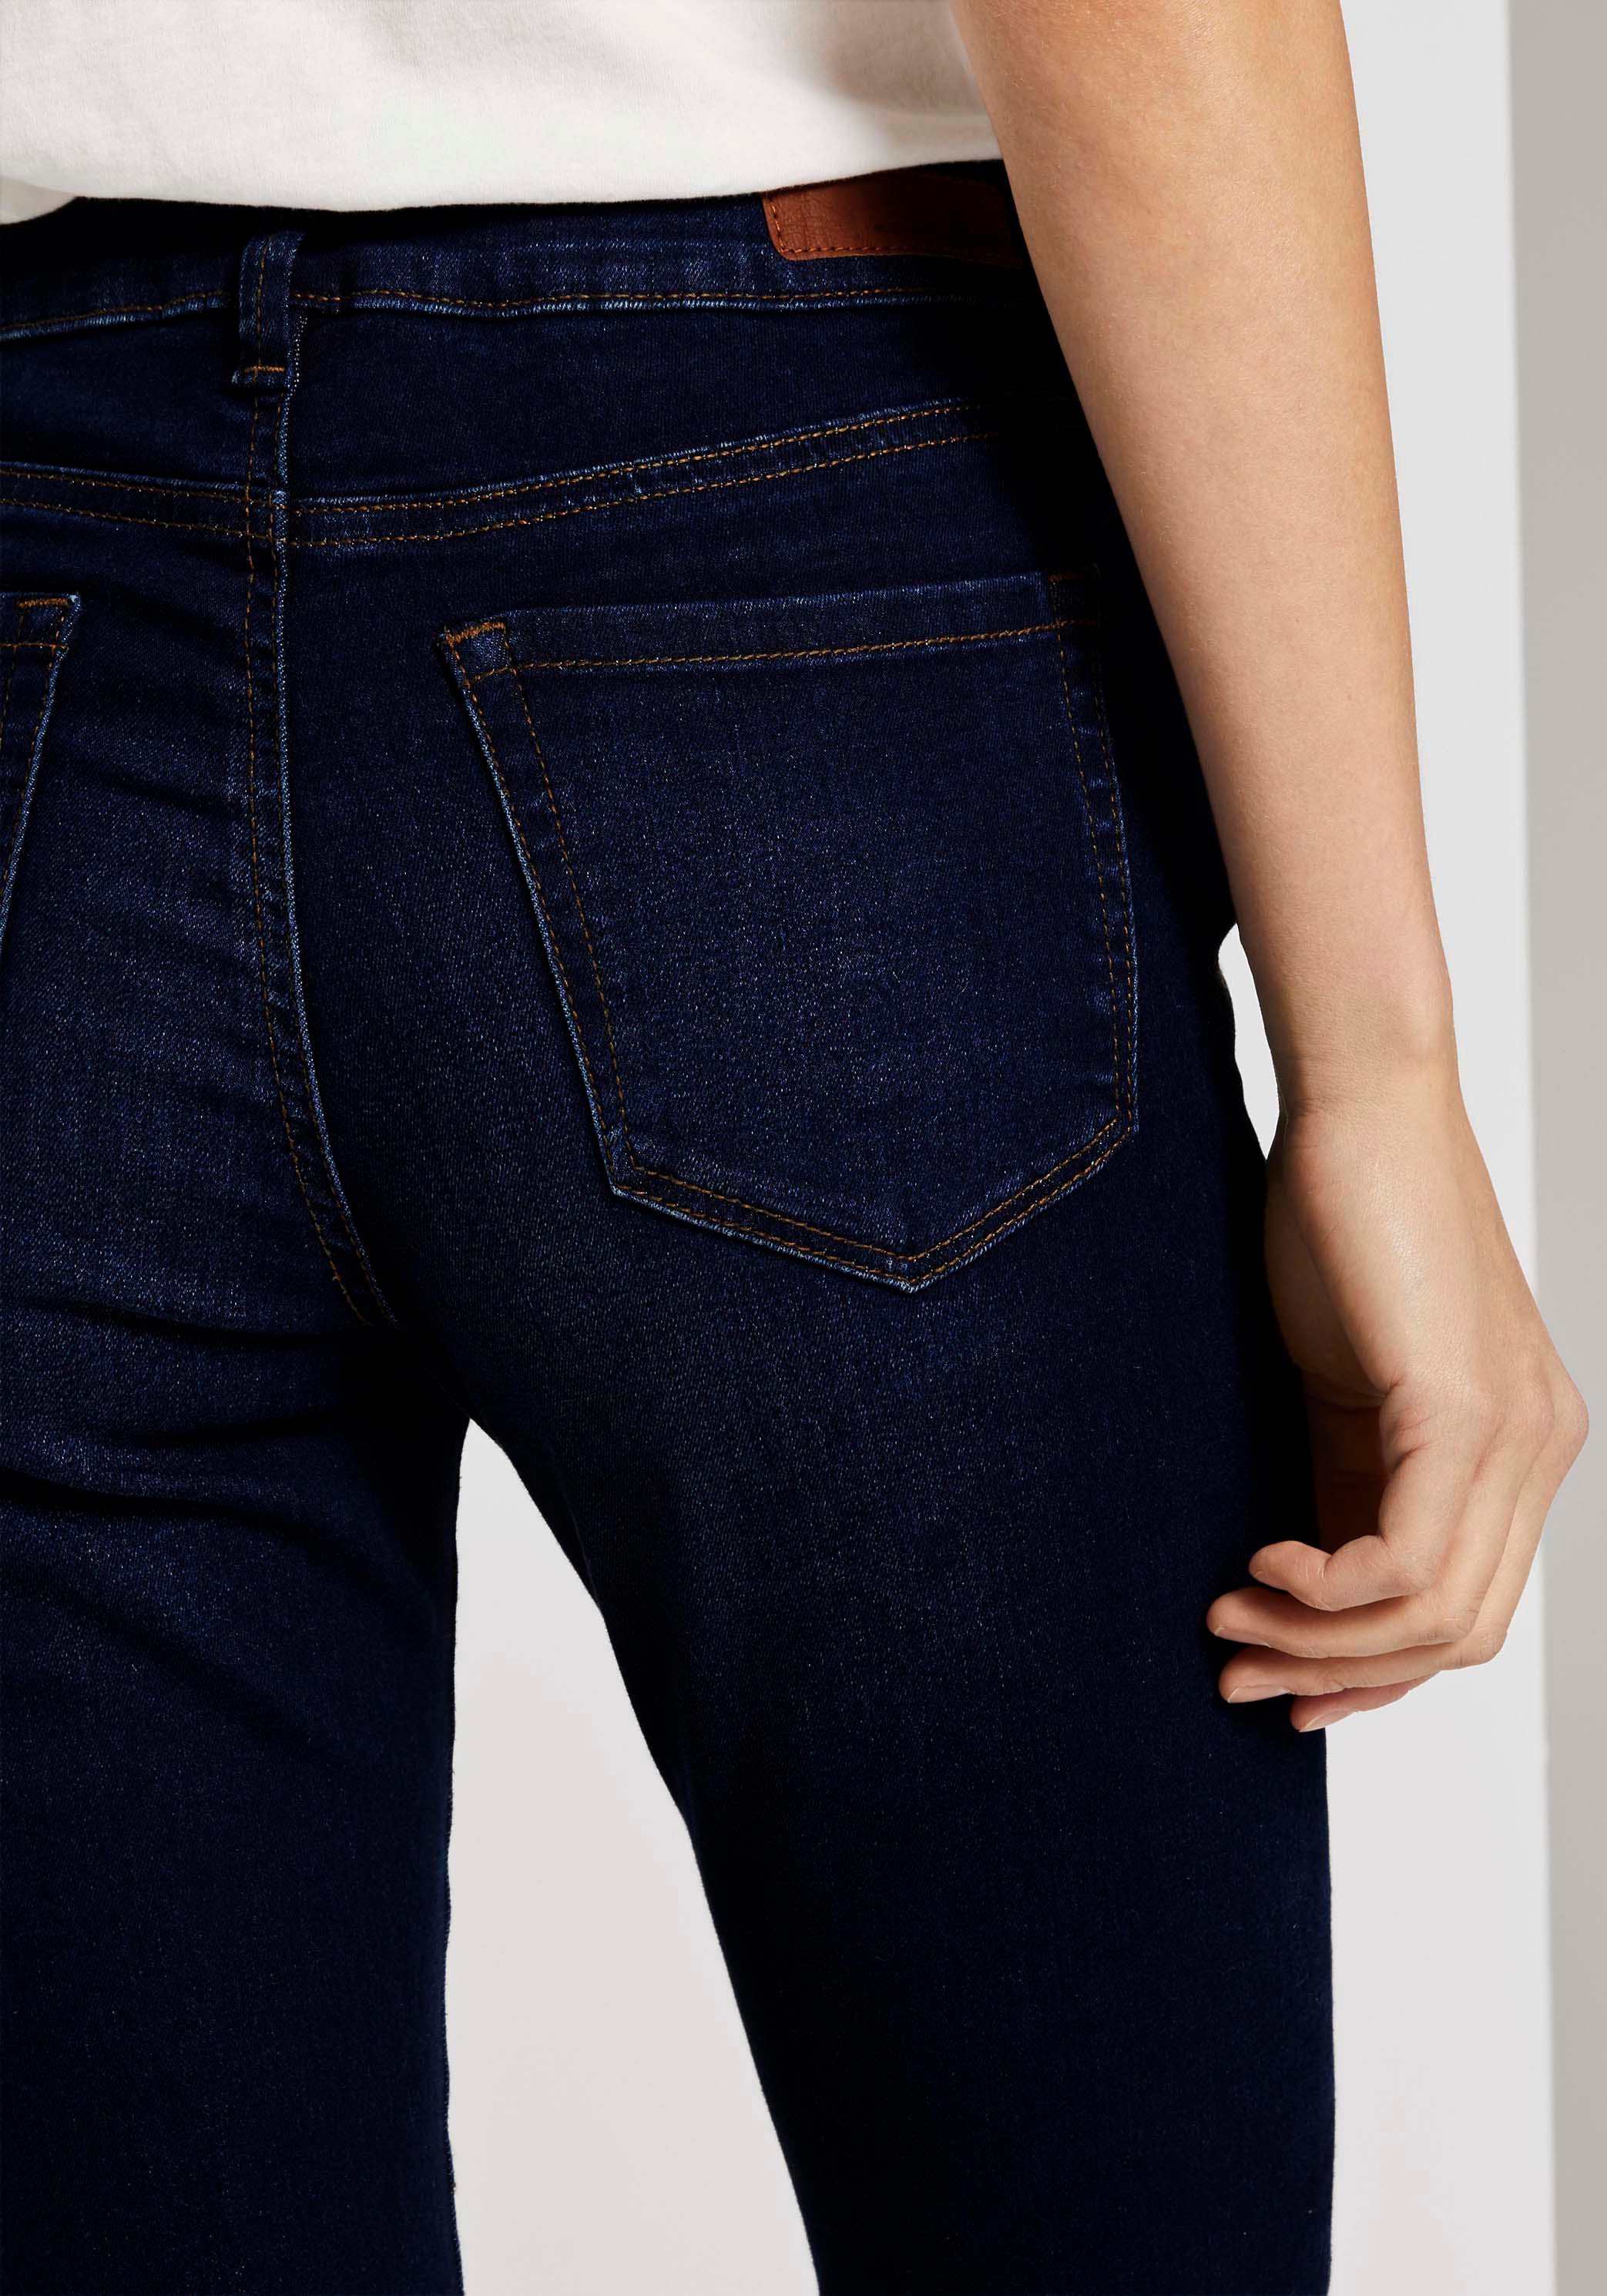 ♕ TOM TAILOR Denim versandkostenfrei kaufen im Slim-fit-Jeans, Schnitt 5-Pocket